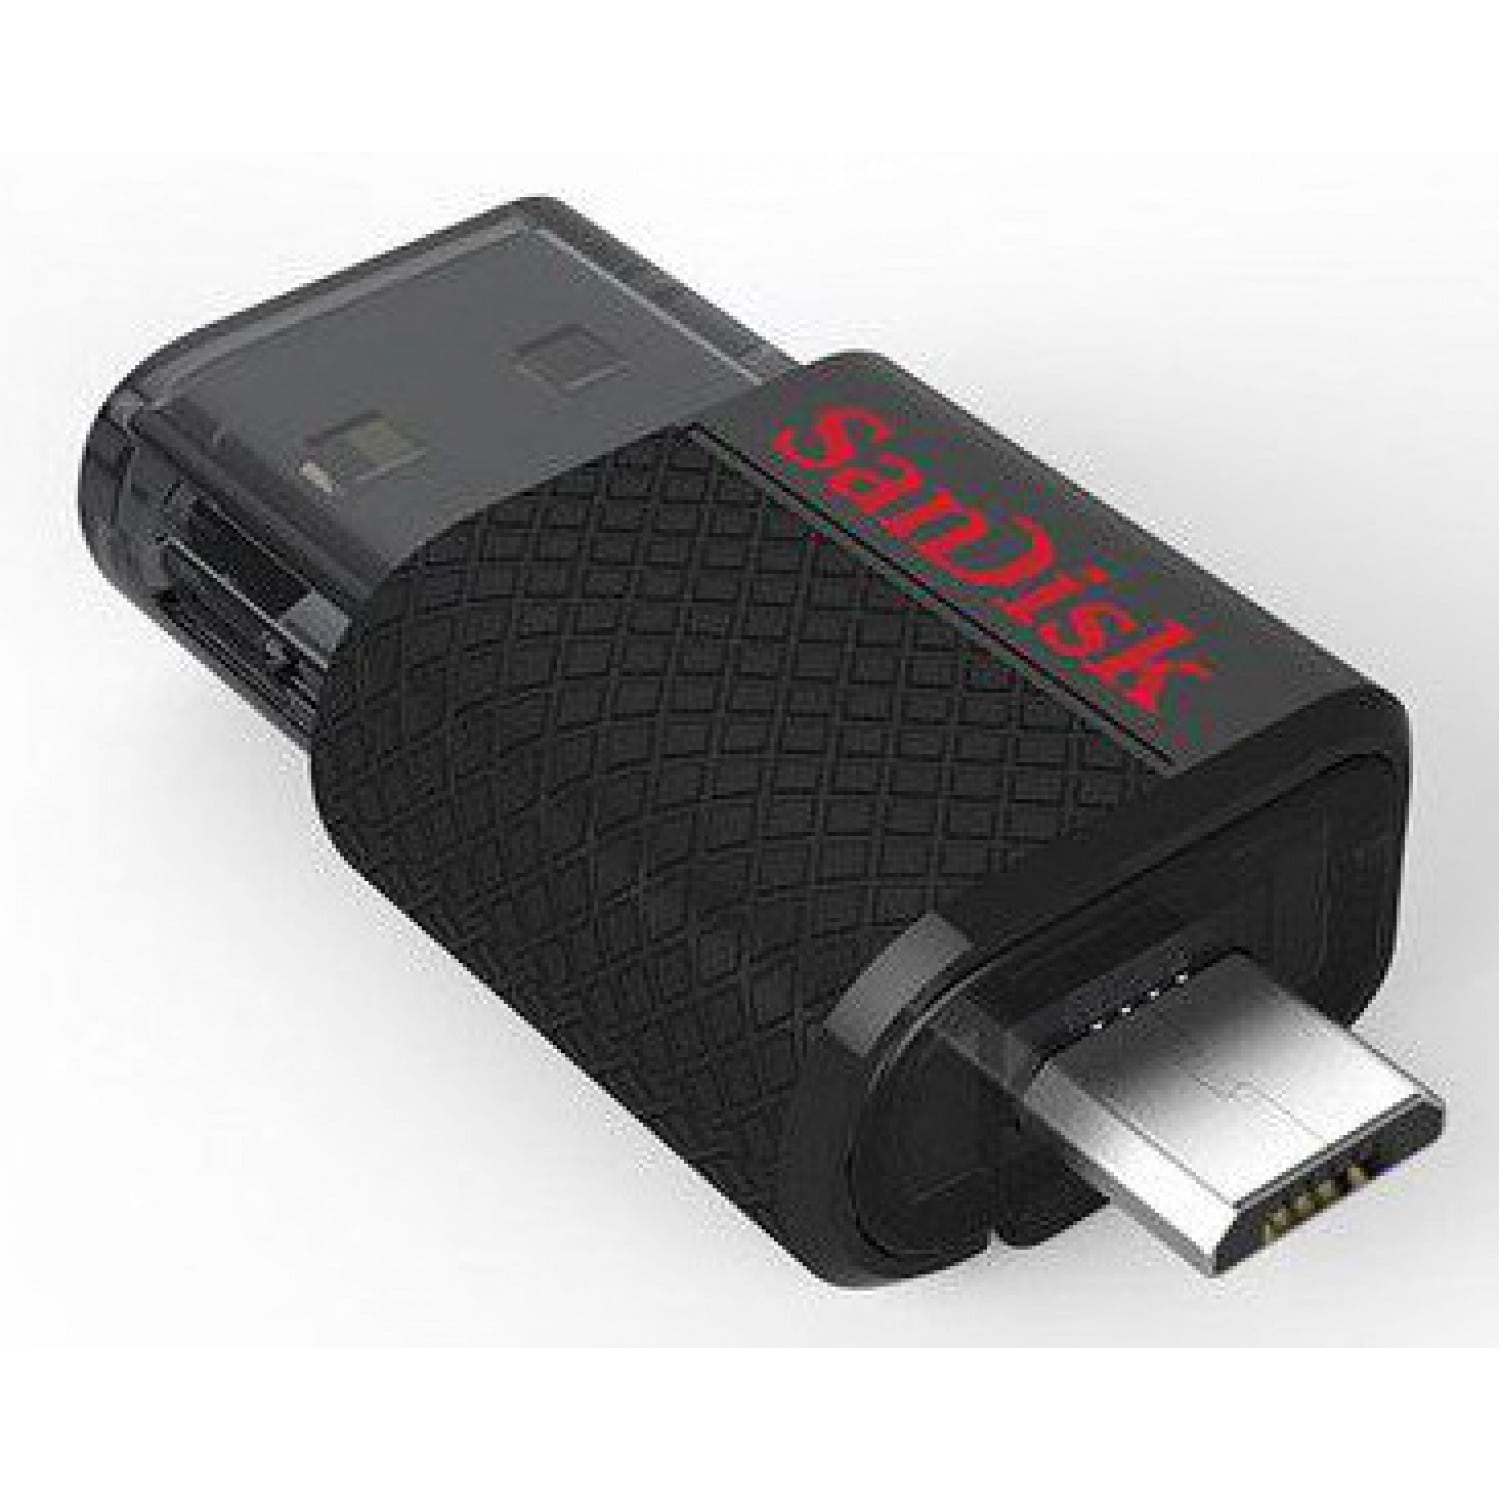 SANDISK DUAL DRIVE OTG 16GB USB 2.0 - Vente de Matériel, Mobilier